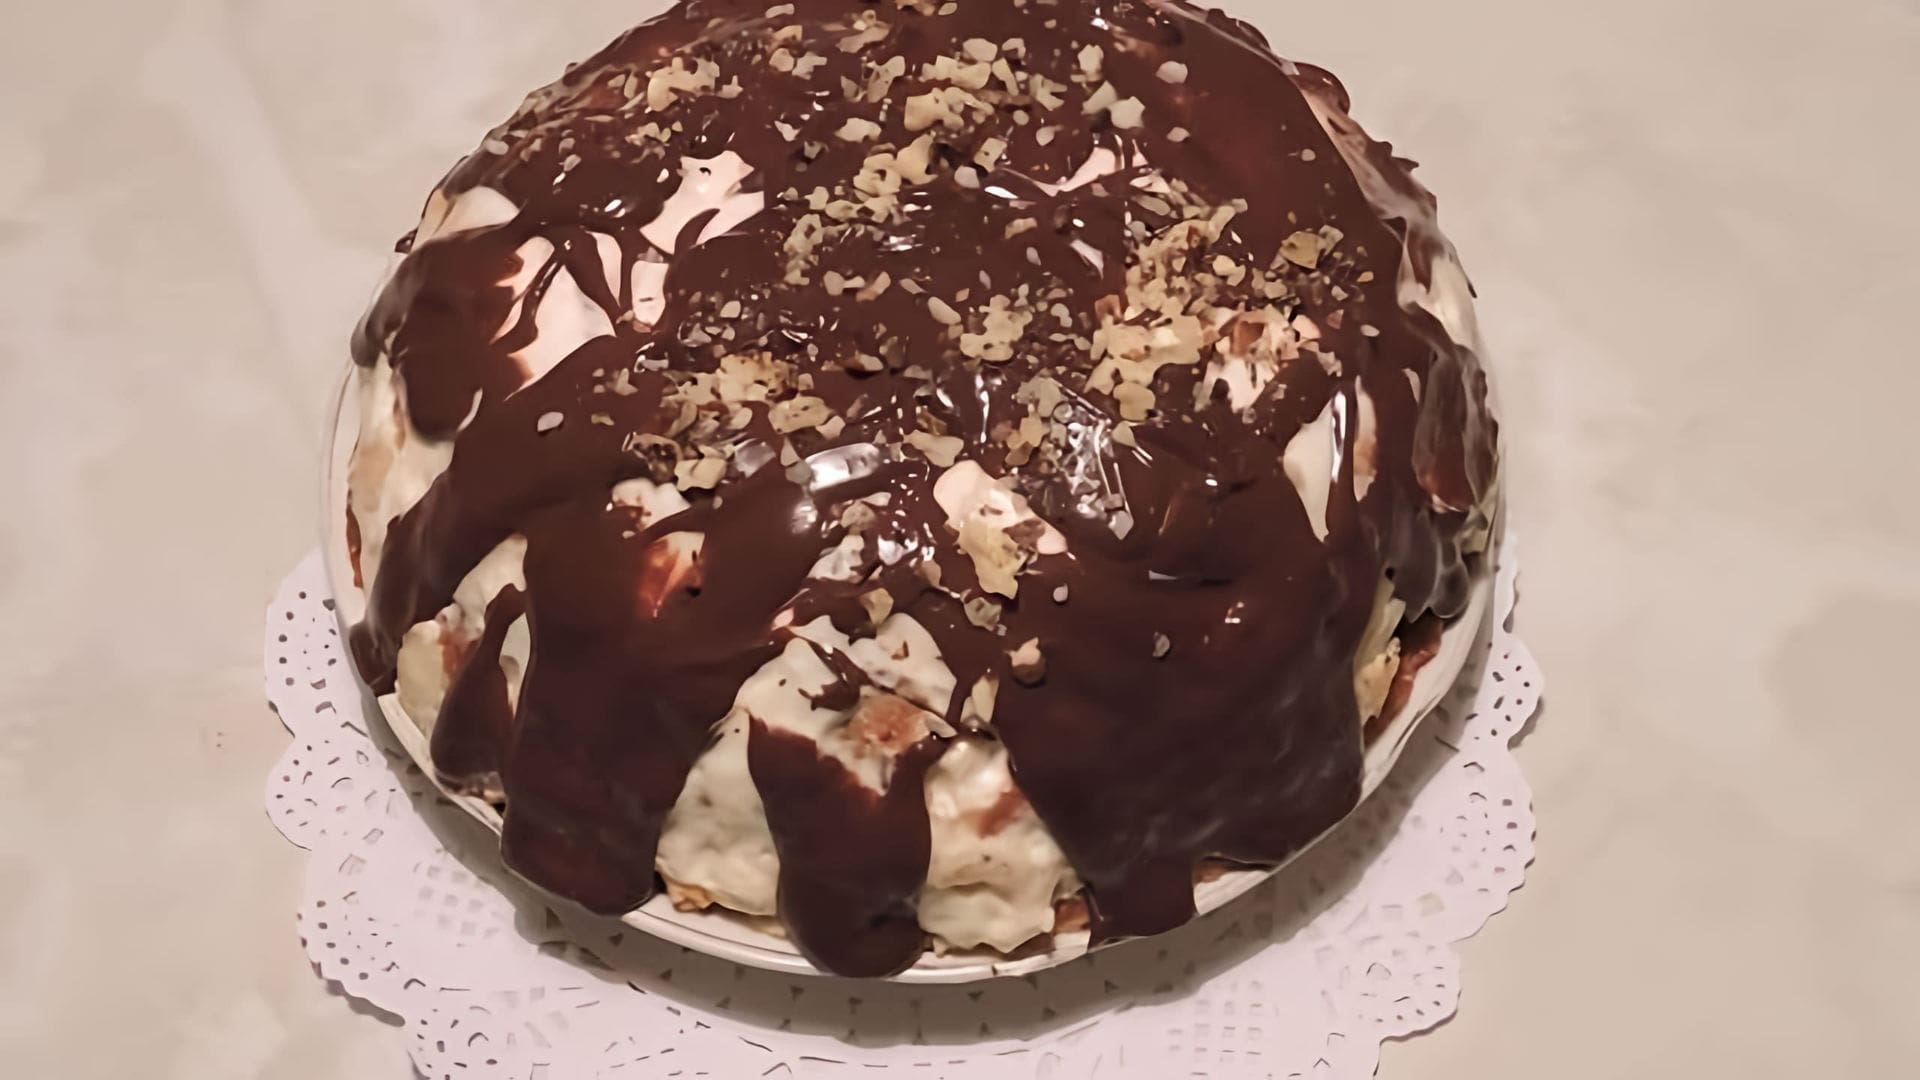 В этом видео демонстрируется процесс приготовления торта Панчо